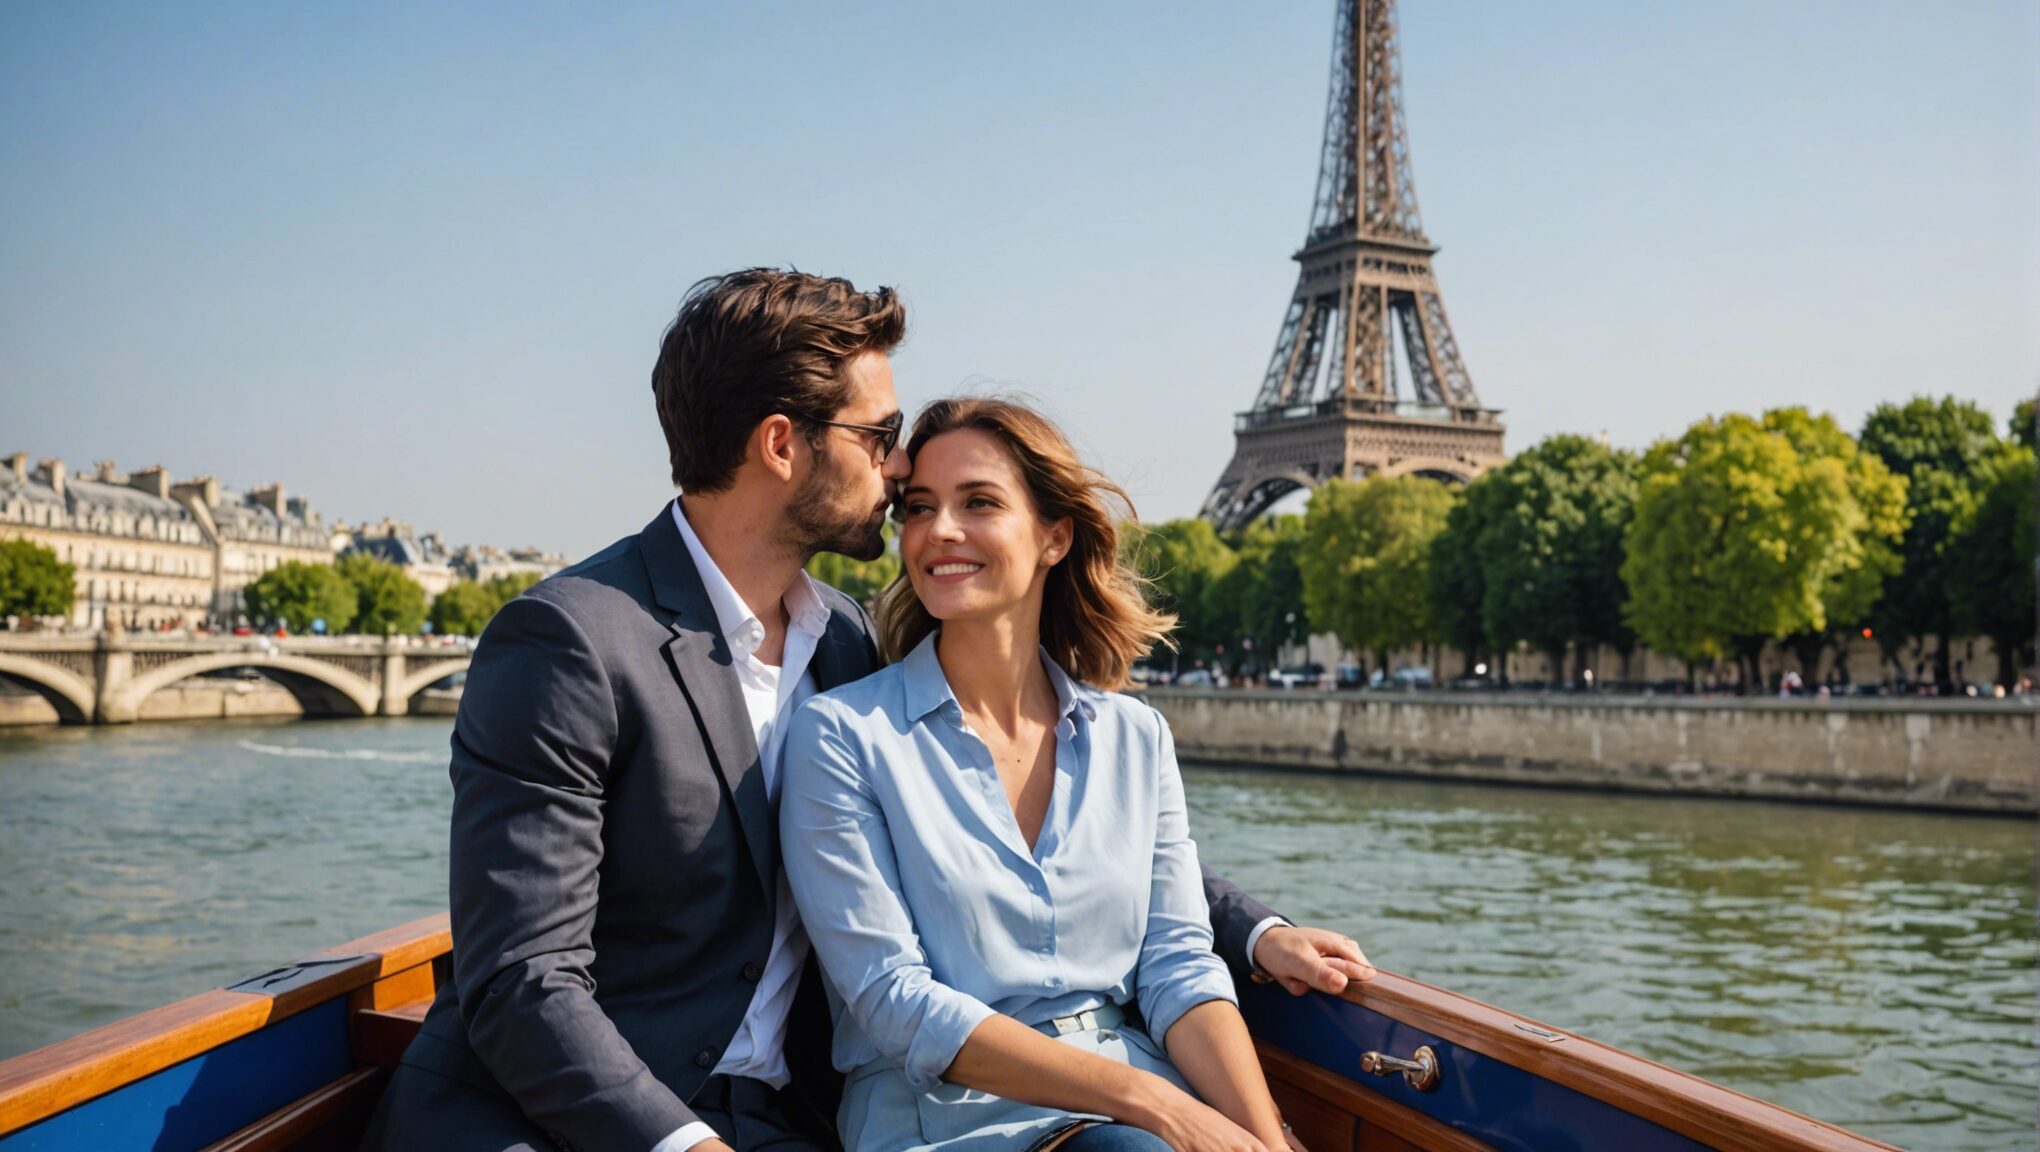 découvrez pourquoi une balade en bateau mouche sur la seine est l'expérience ultime pour les amoureux à paris. profitez de vues envoûtantes et d'une atmosphère romantique dans la ville de l'amour.